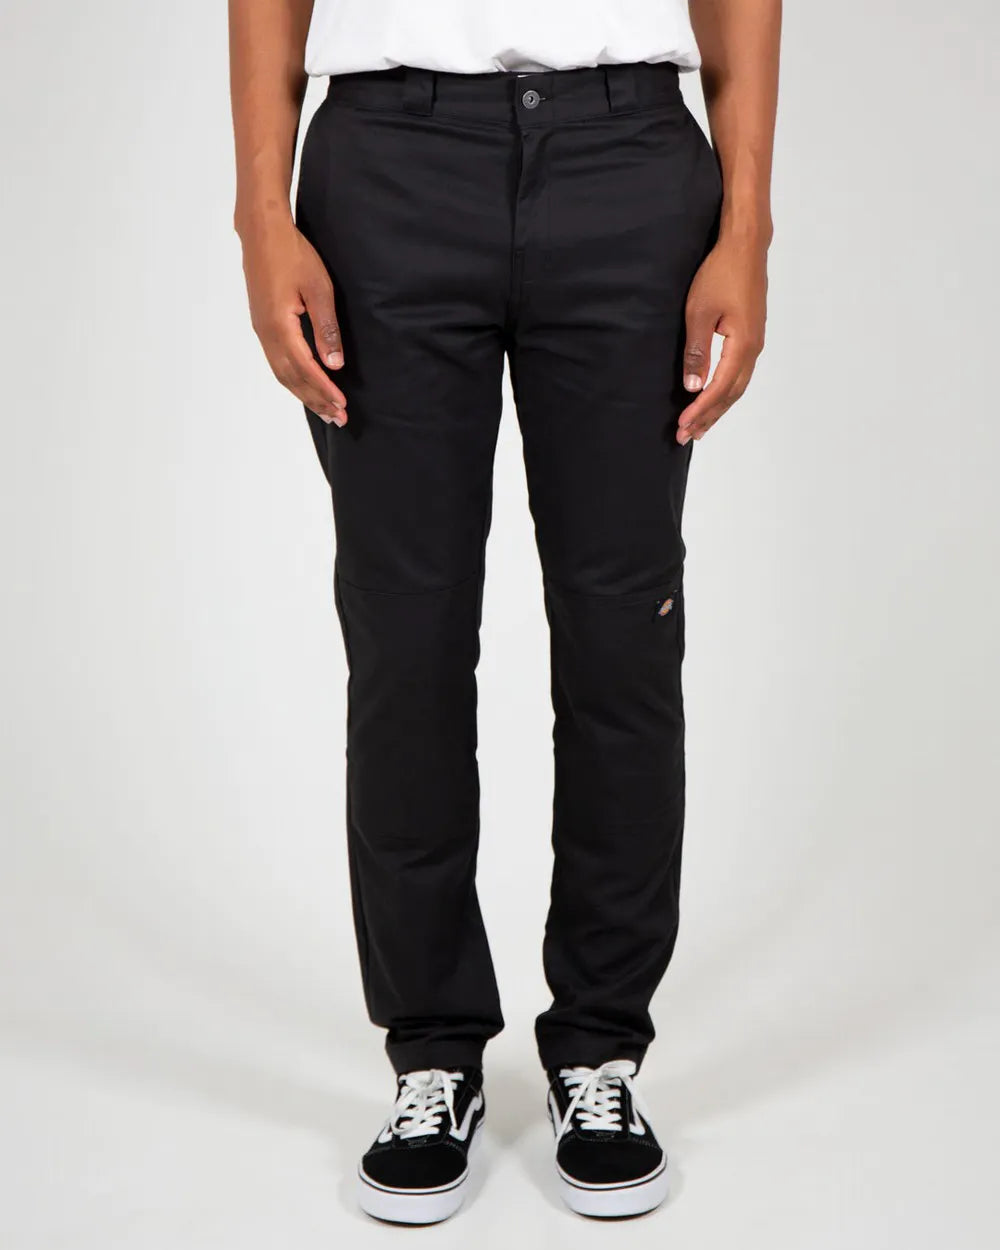 5-pocket twill pant London fit - Slim straight | Le 31 | Shop Men's Skinny  Pants | Simons